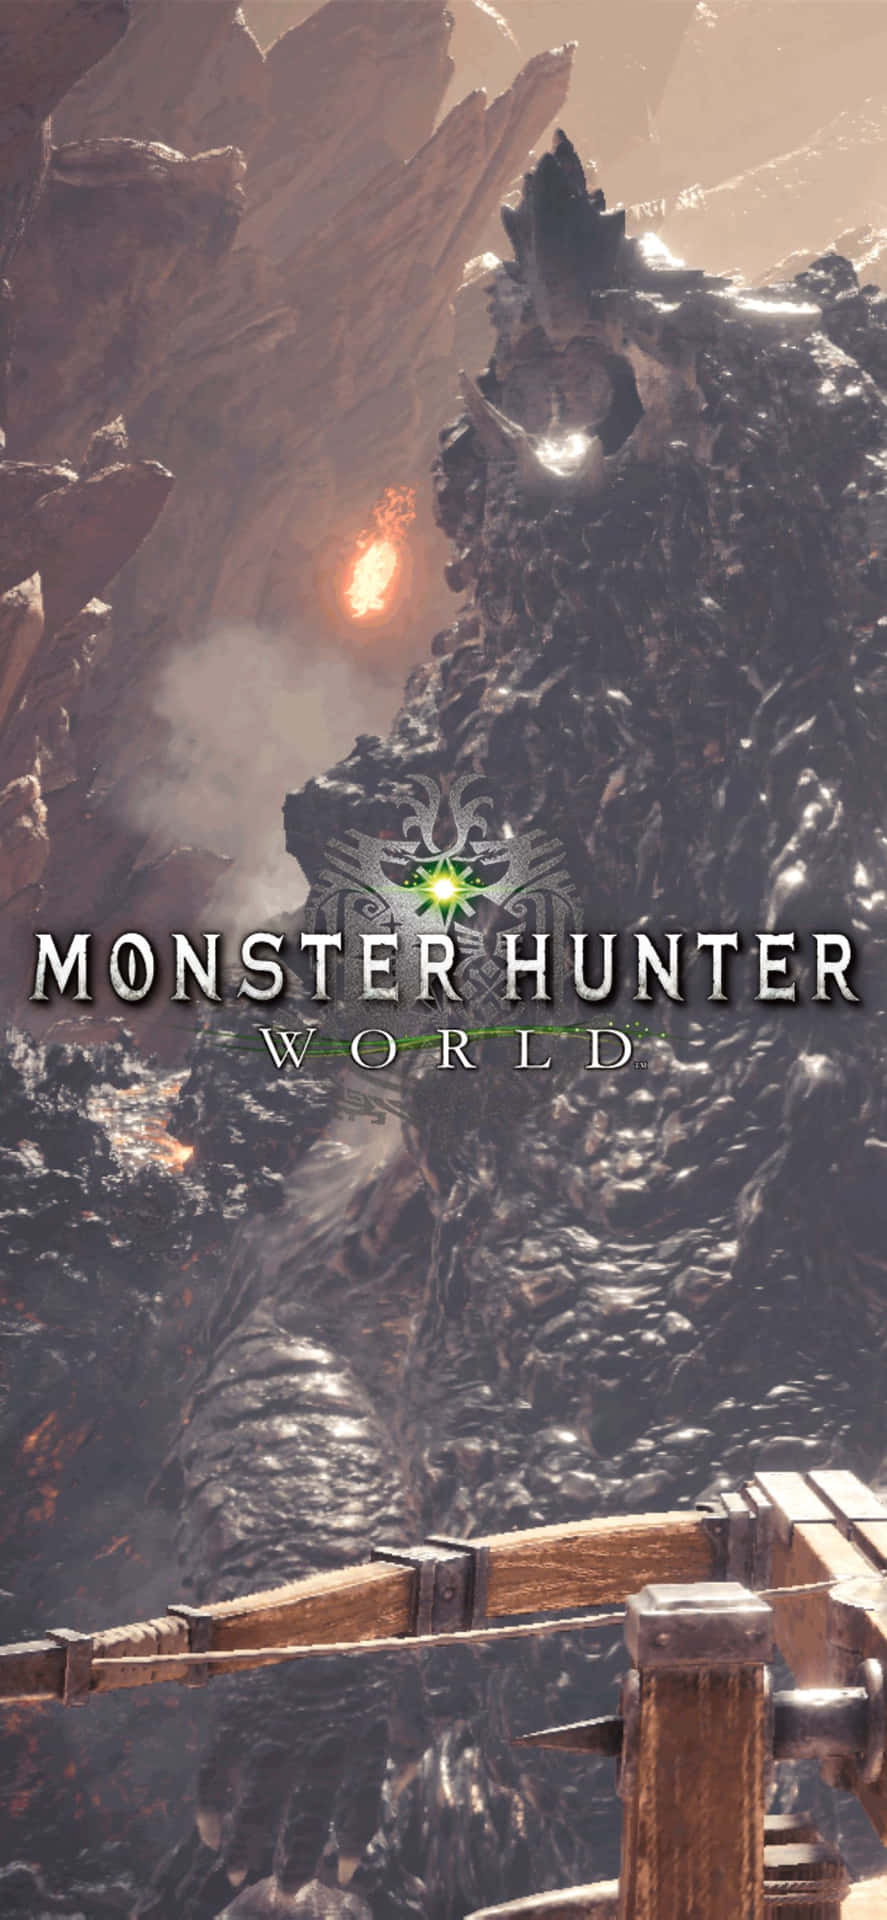 Hintergrundbildfür Das Iphone Xs Max: Monster Hunter World - Feuermotiv.